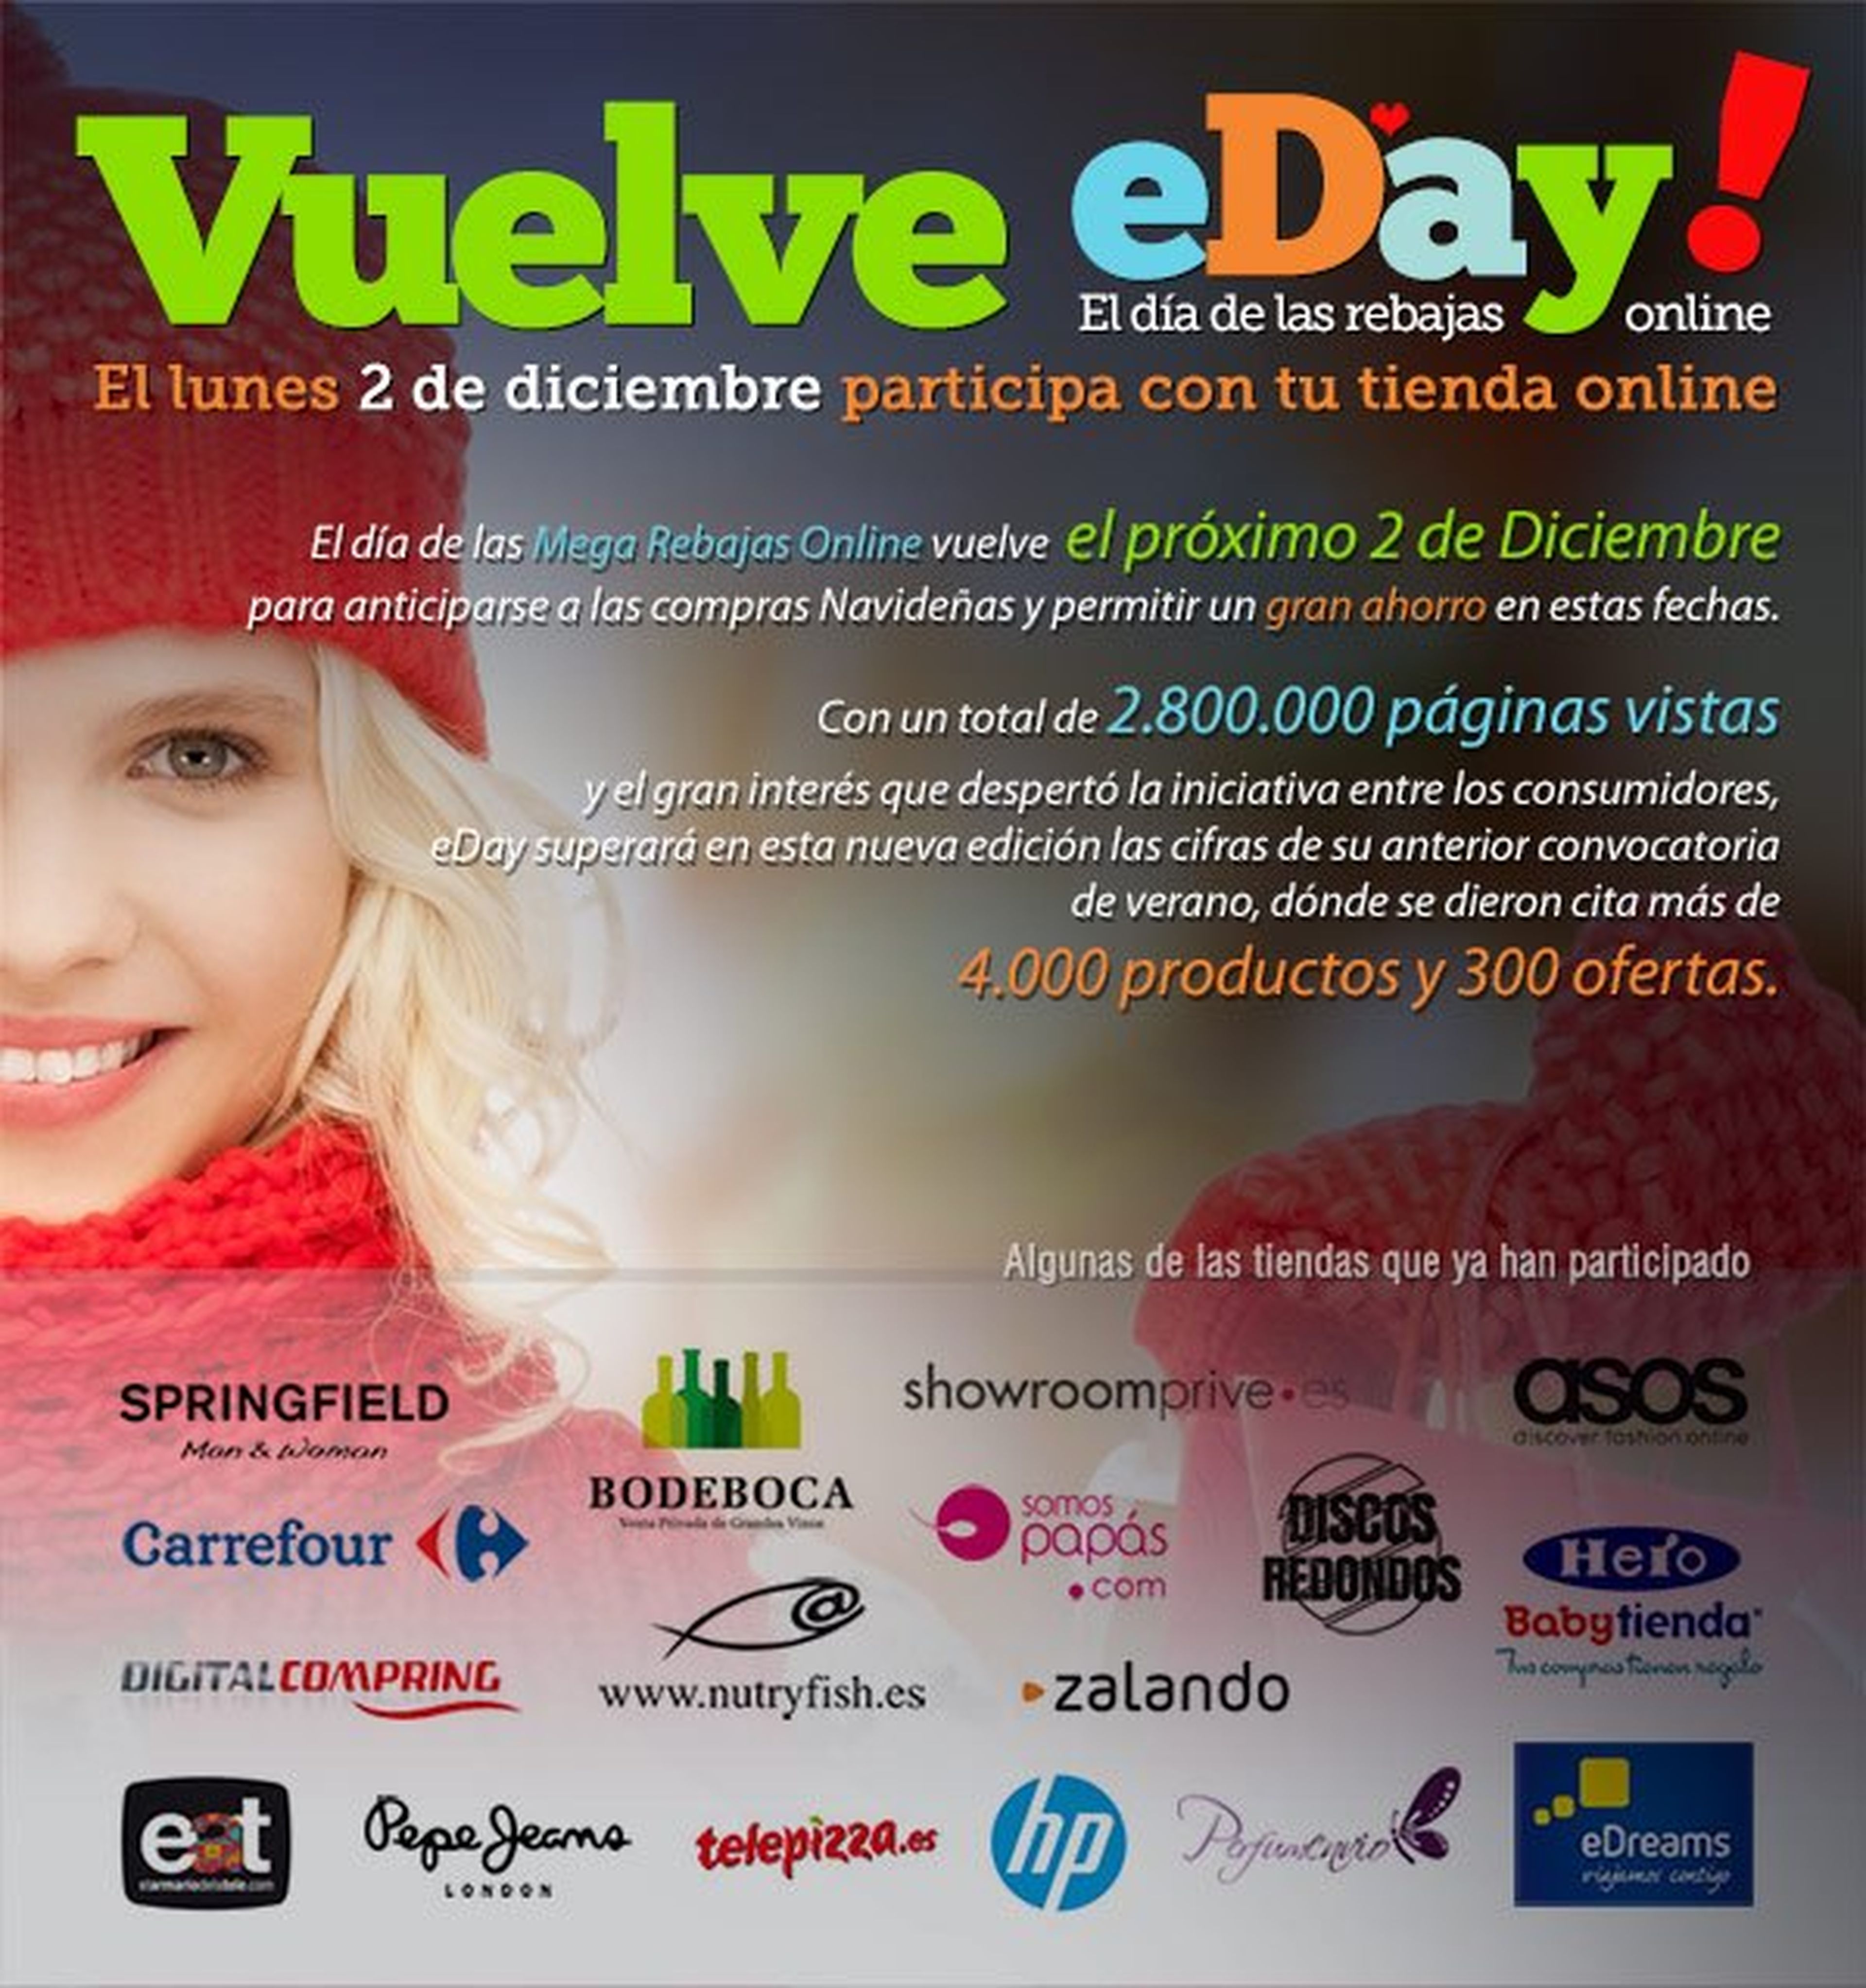 eDay!, ofertas de Cyber Monday en España